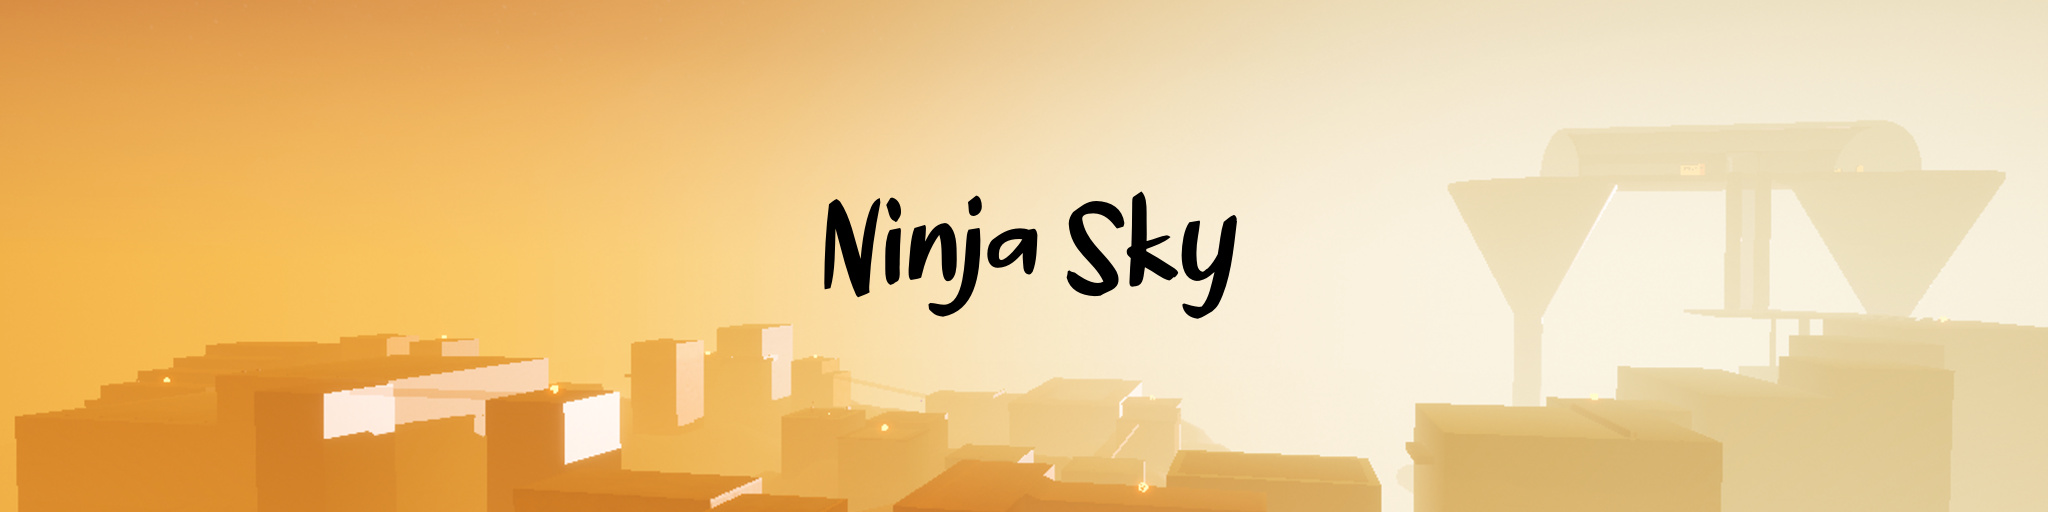 Ninja Sky